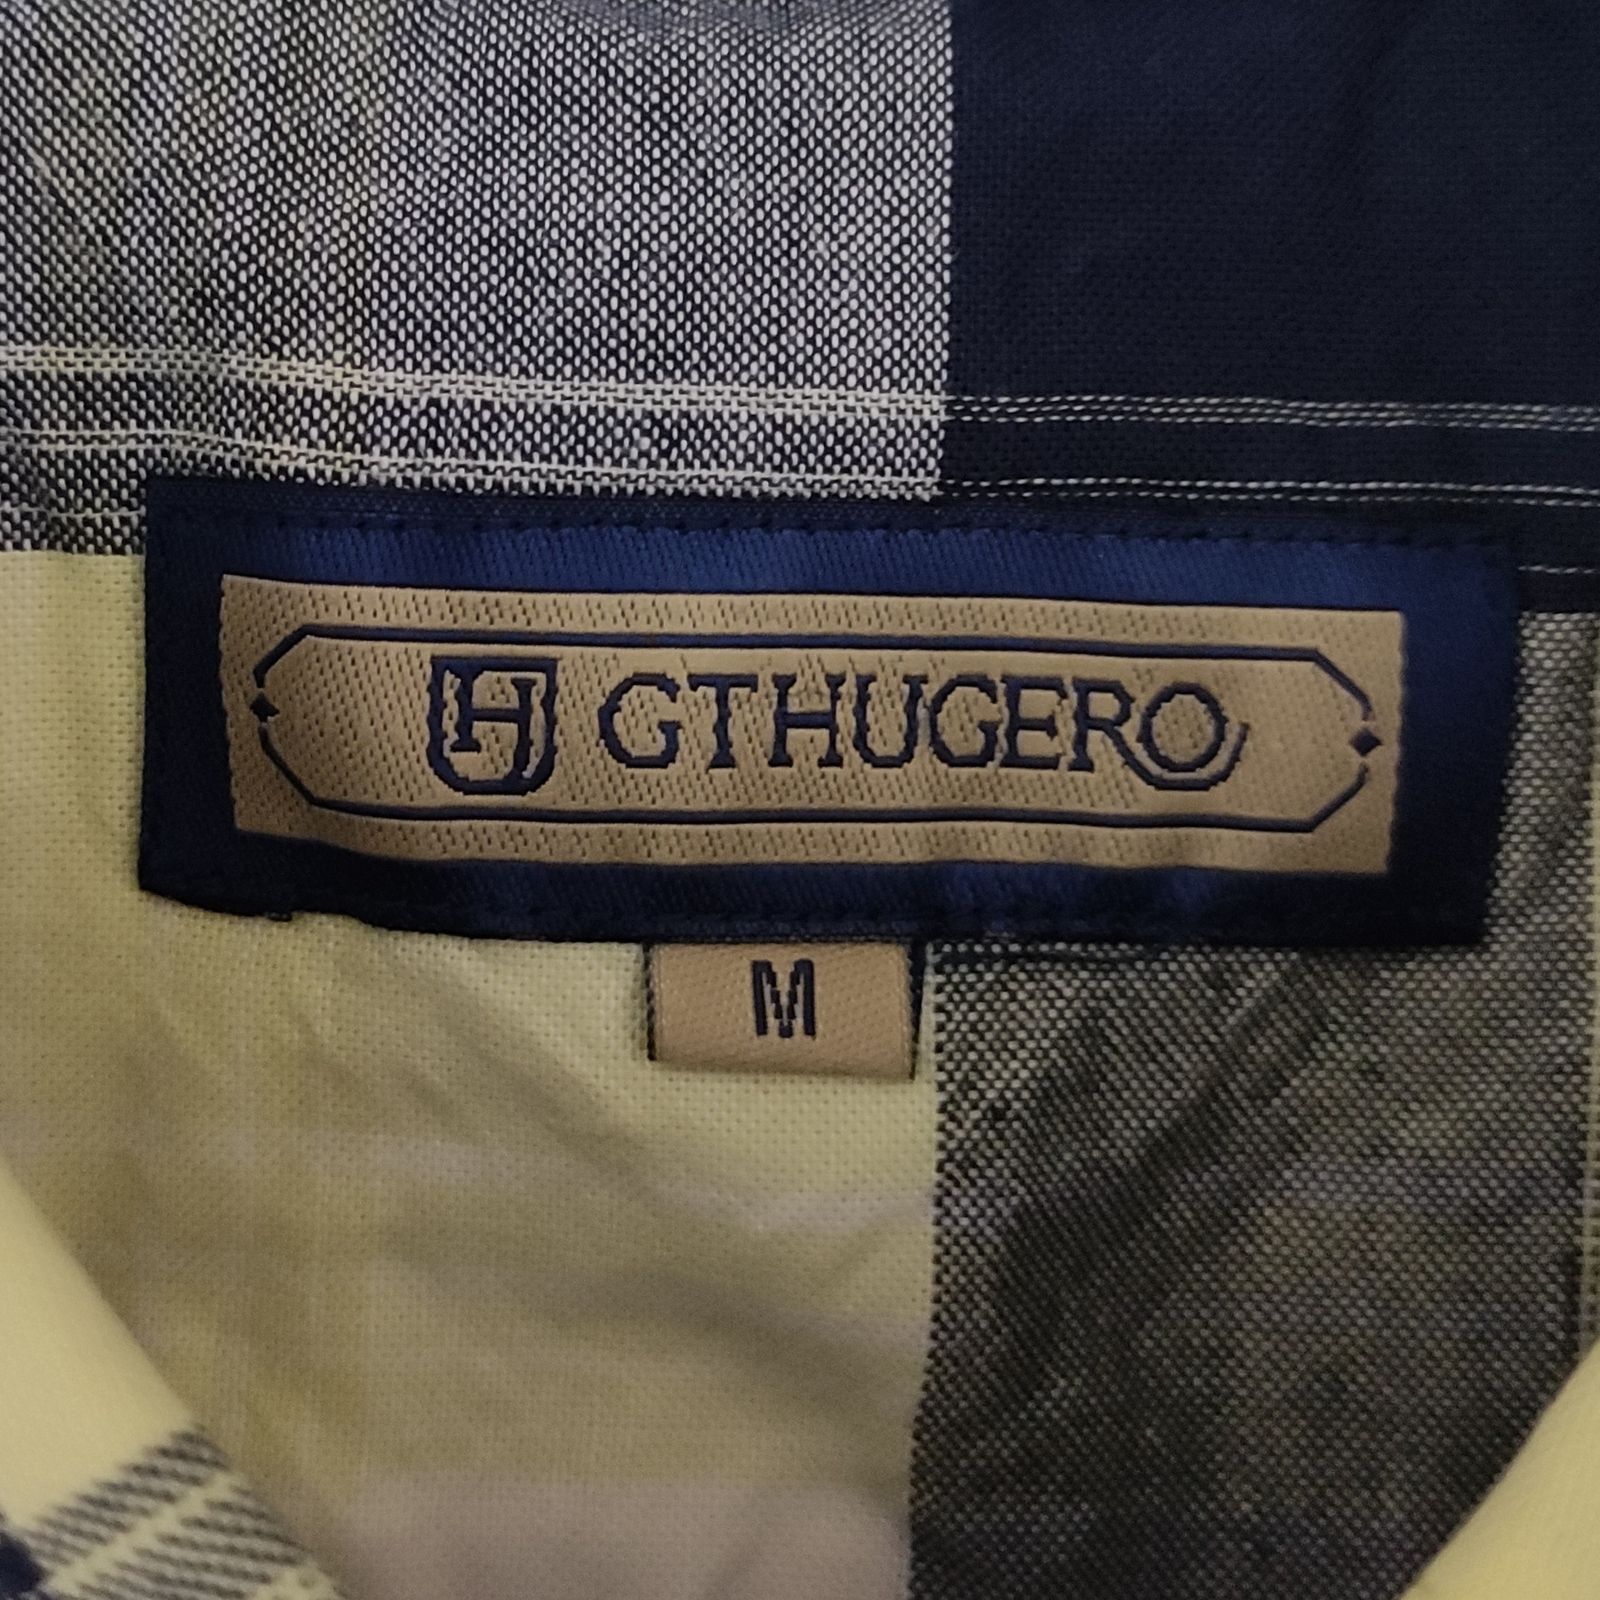 پیراهن آستین کوتاه مردانه جی تی هوگرو مدل 908 -  - 5